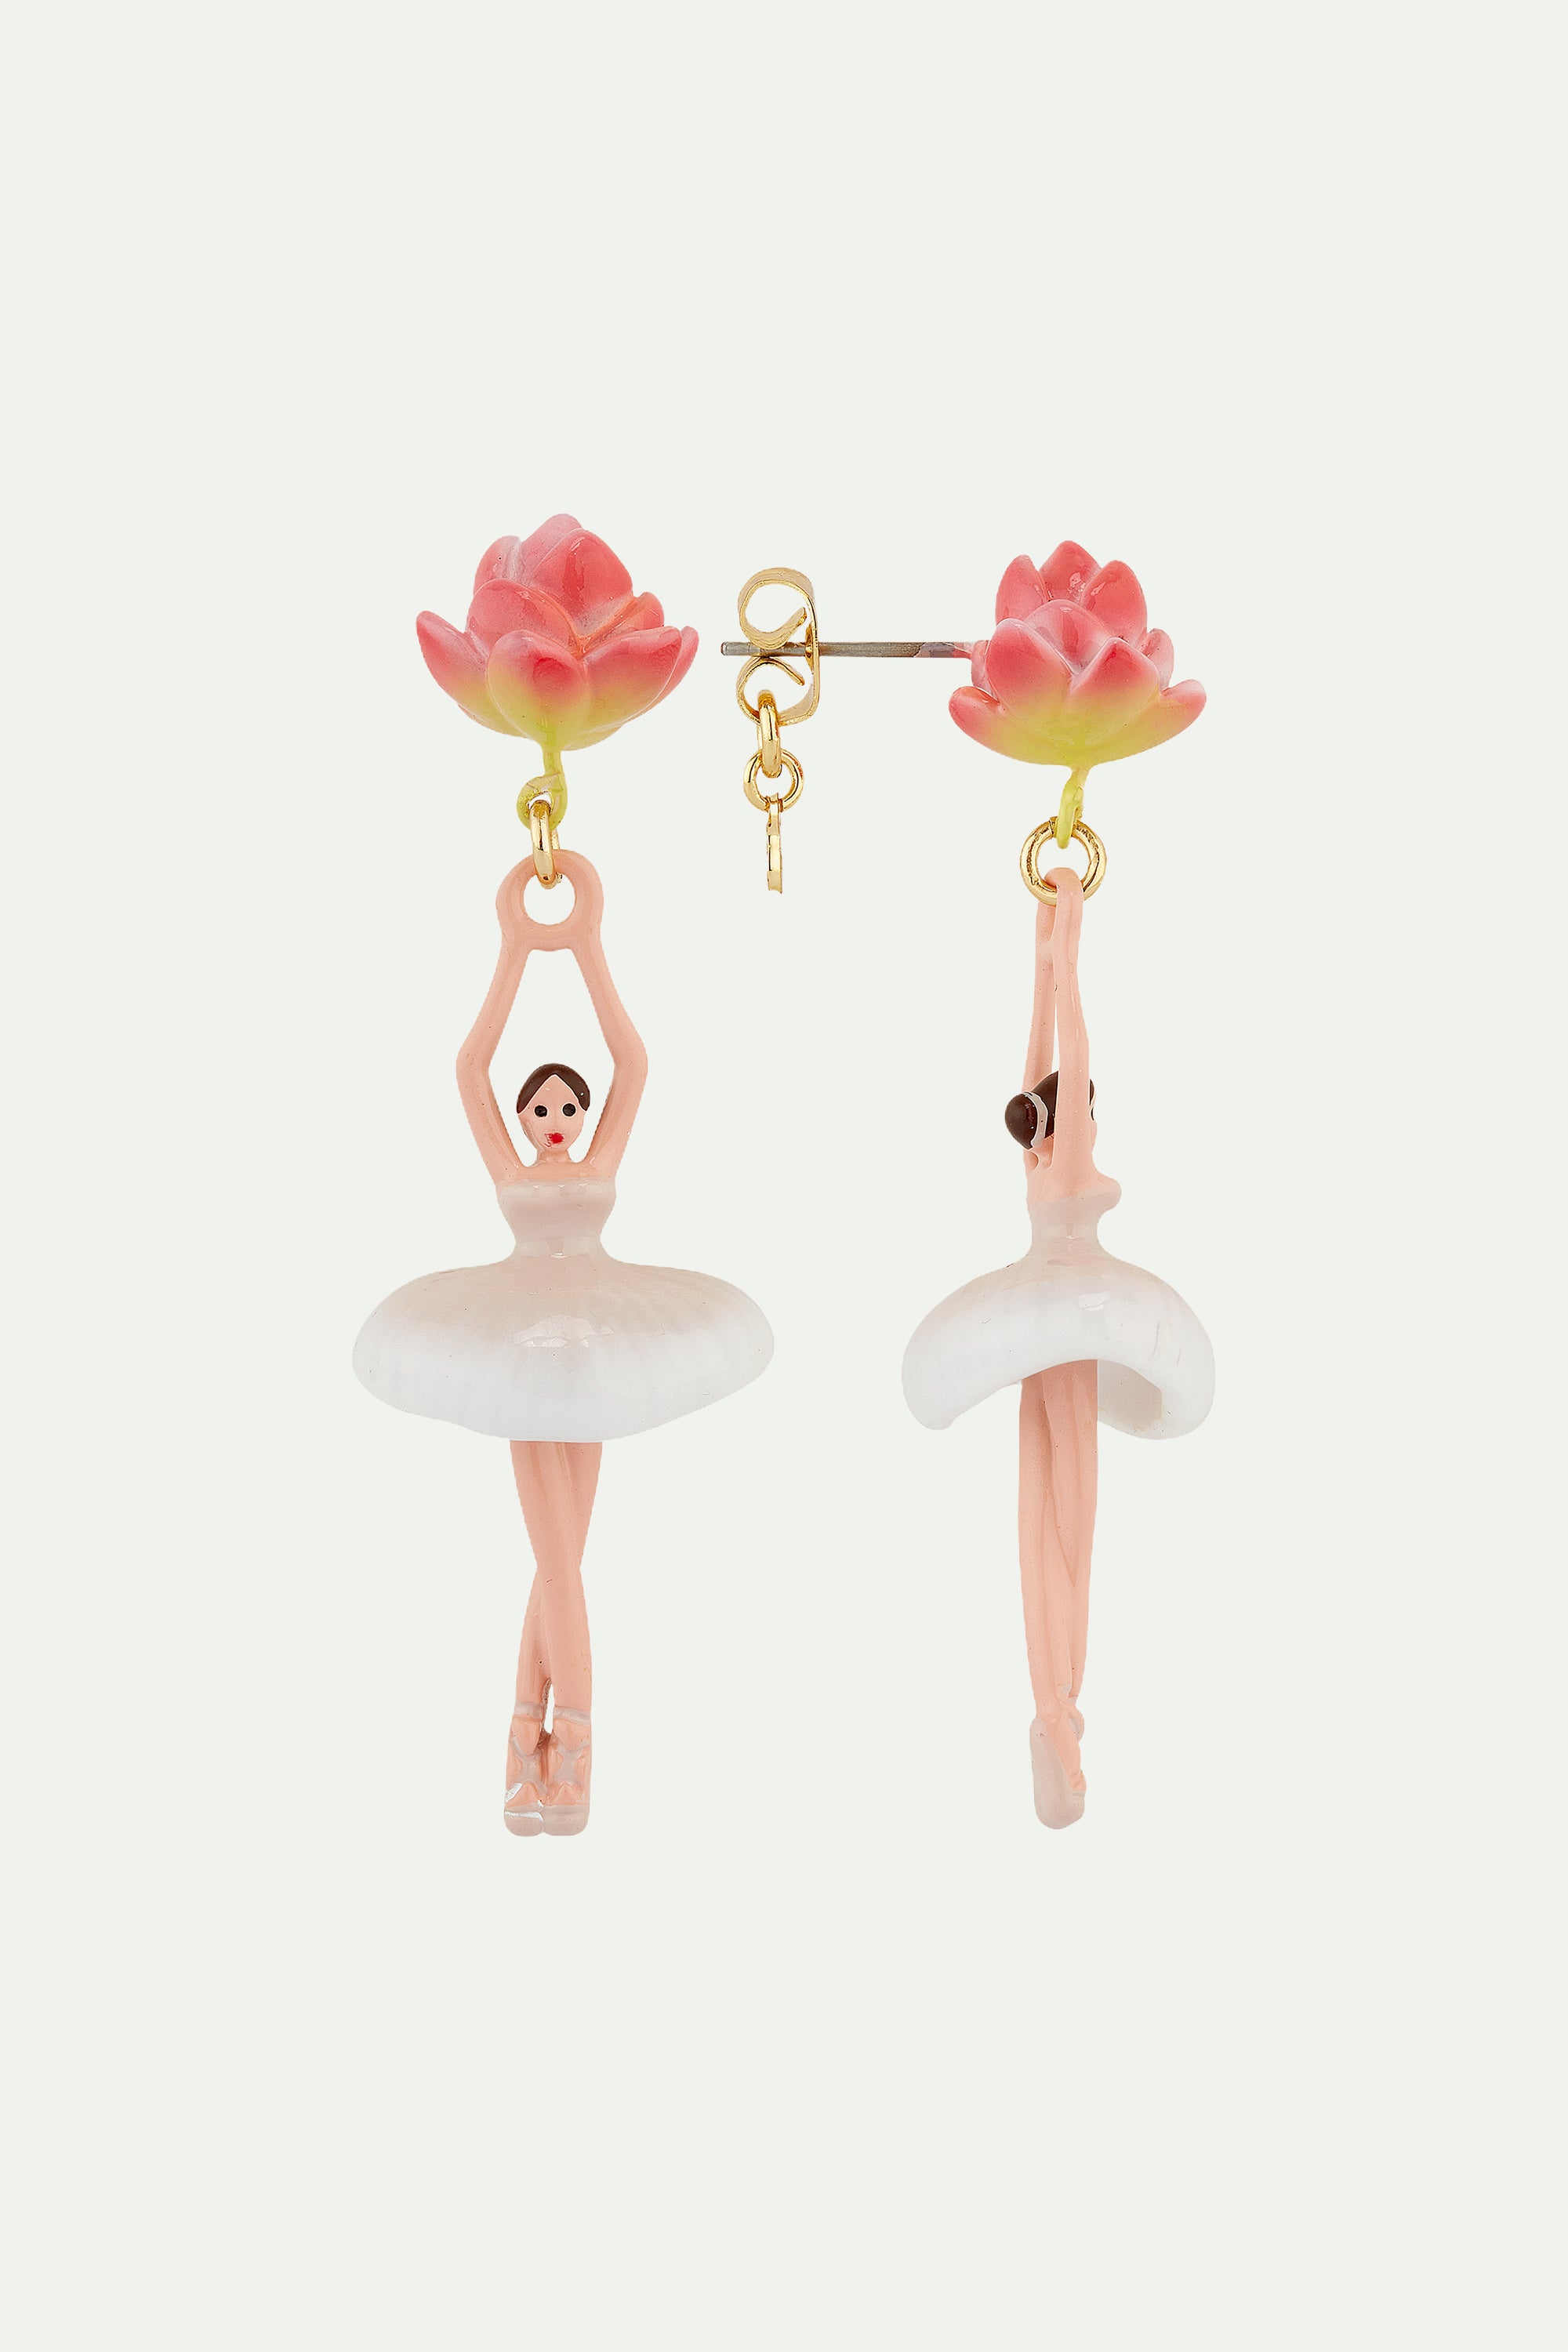 Lotus flower ballerina post earrings